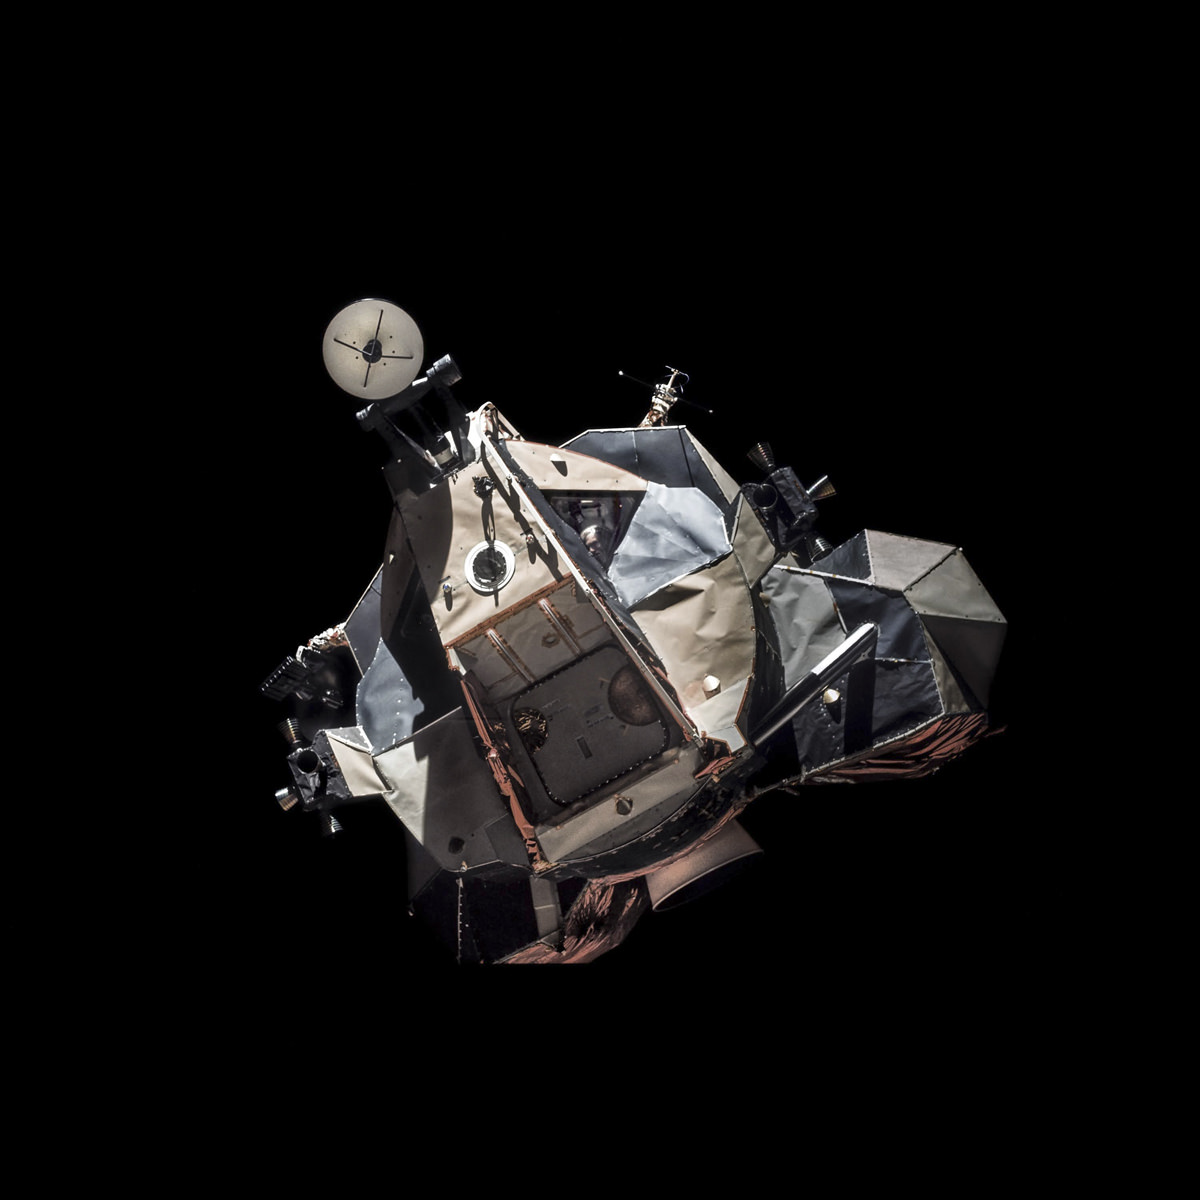 ماژول ماه آپولو 17 در حال پرواز در مدار ماه